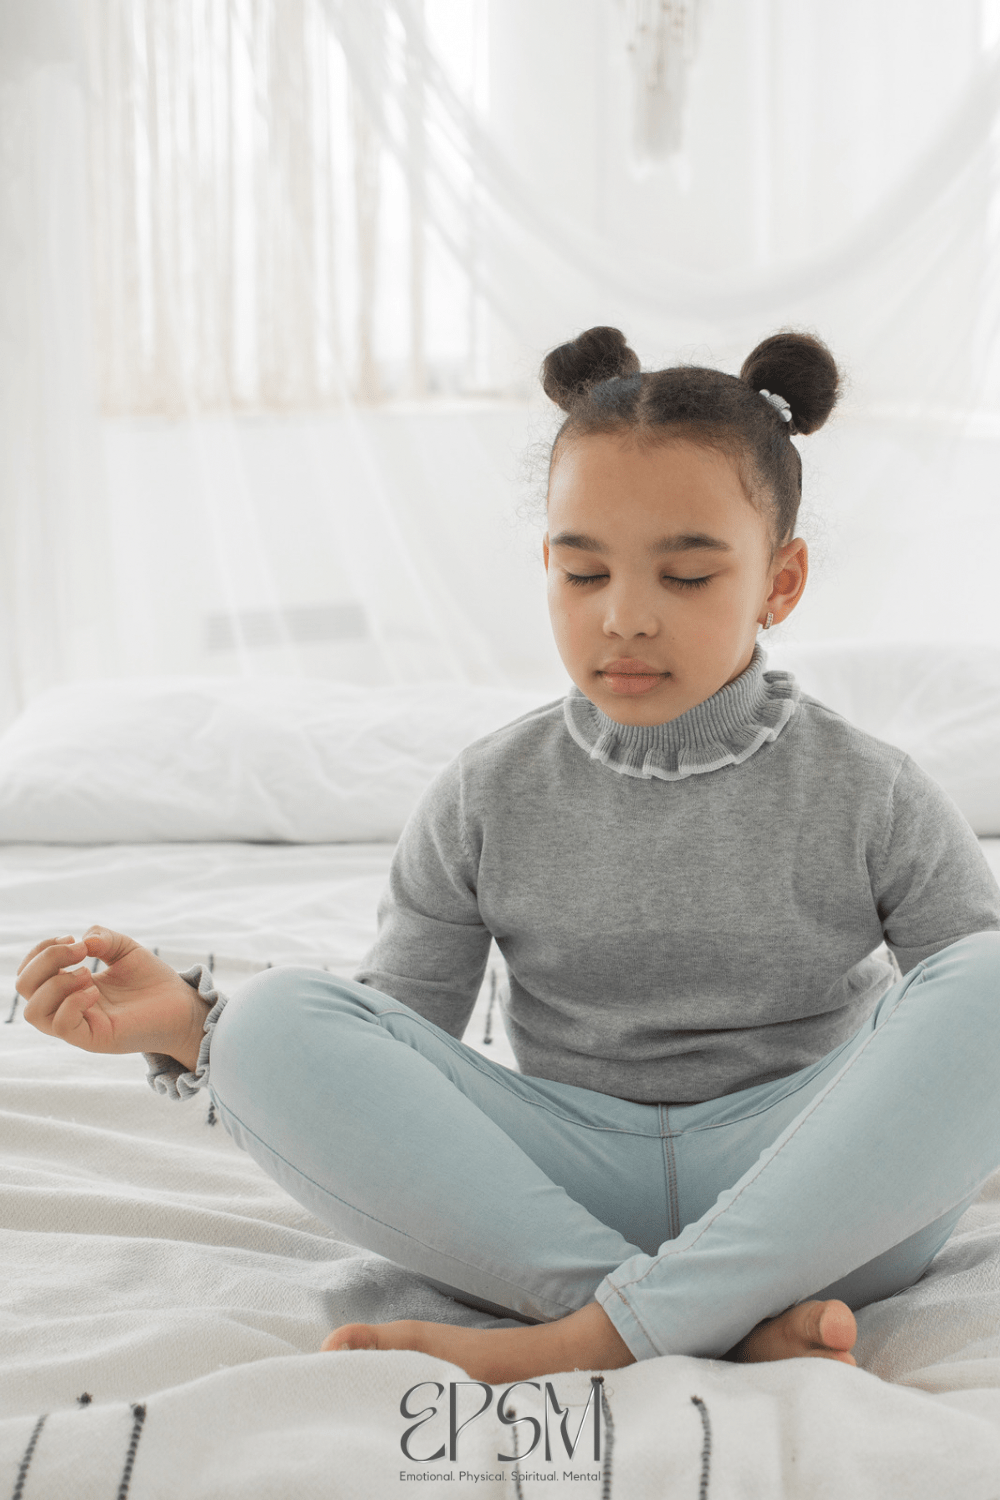 Mindfulness podcasts kids love!